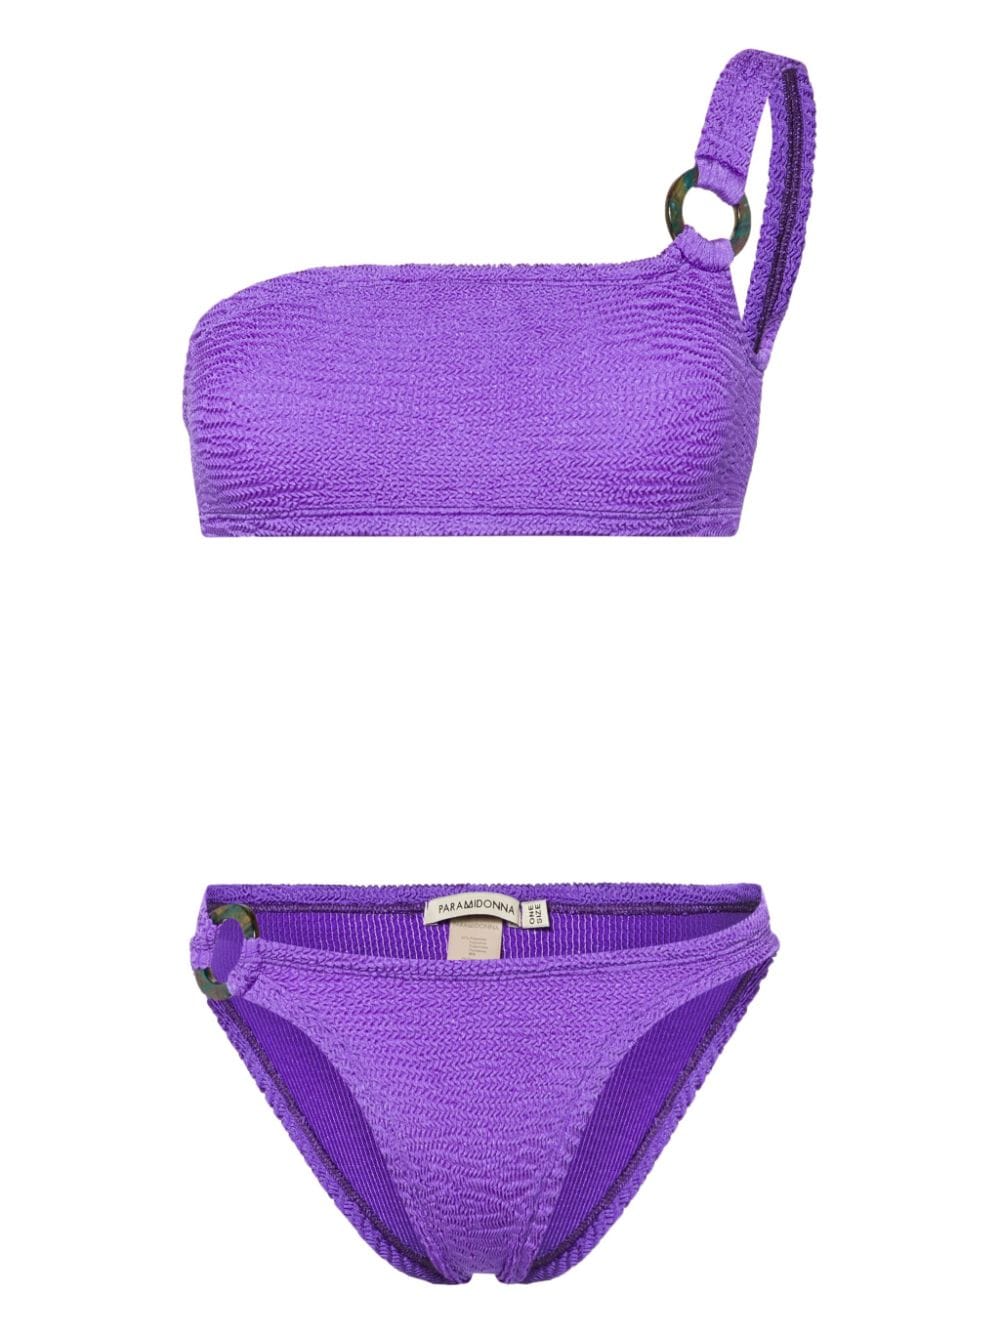 Stassie Grapes bikini set